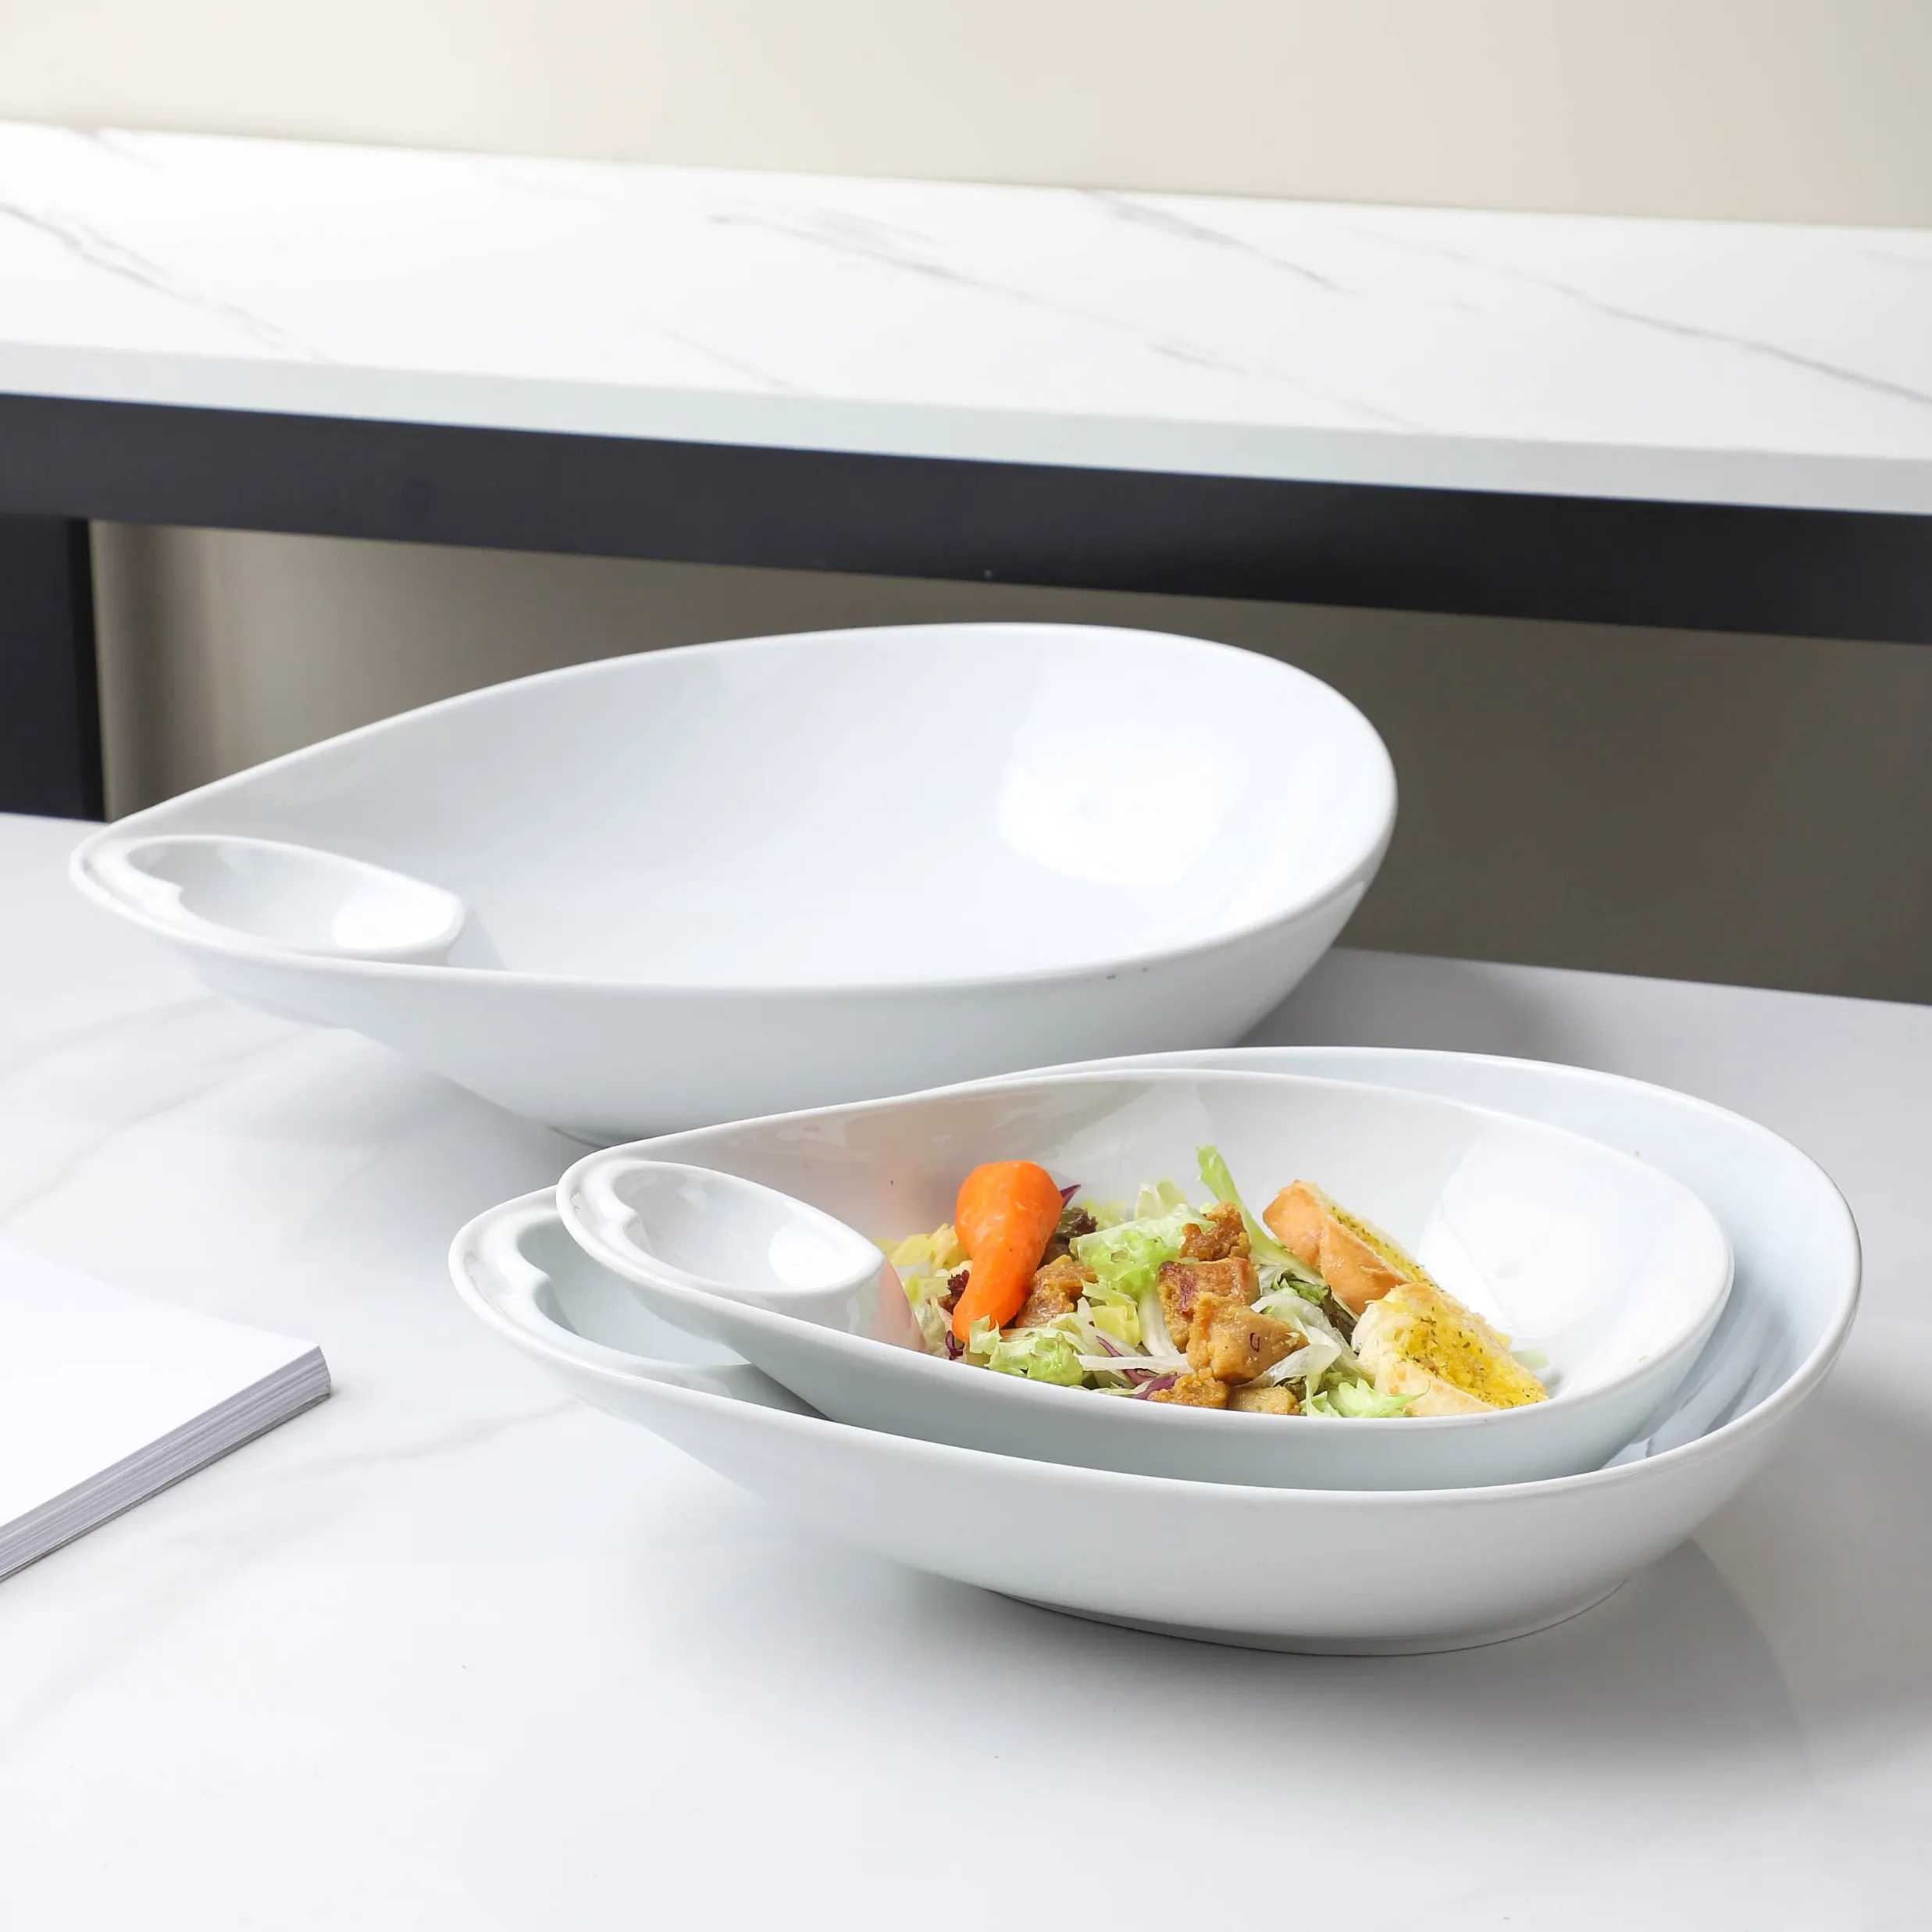 Creativity design 10.25" concave denier bowl porcelain salad bowl for banquet